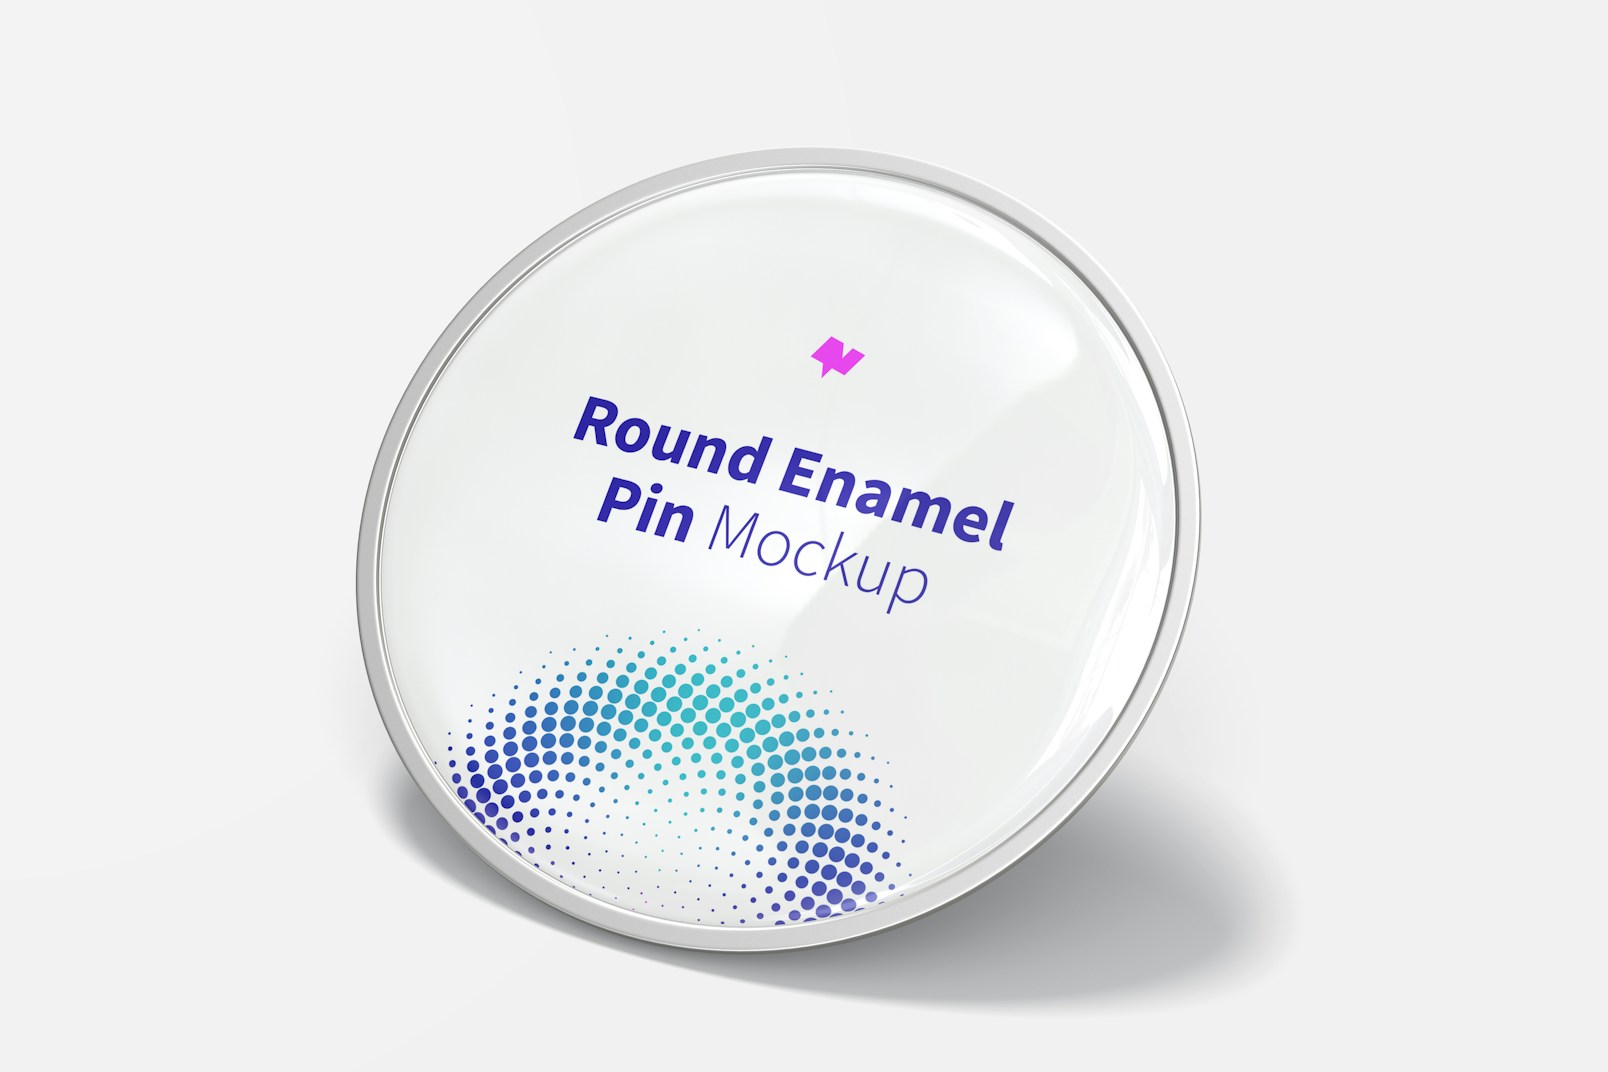 Round Enamel Pin Mockup